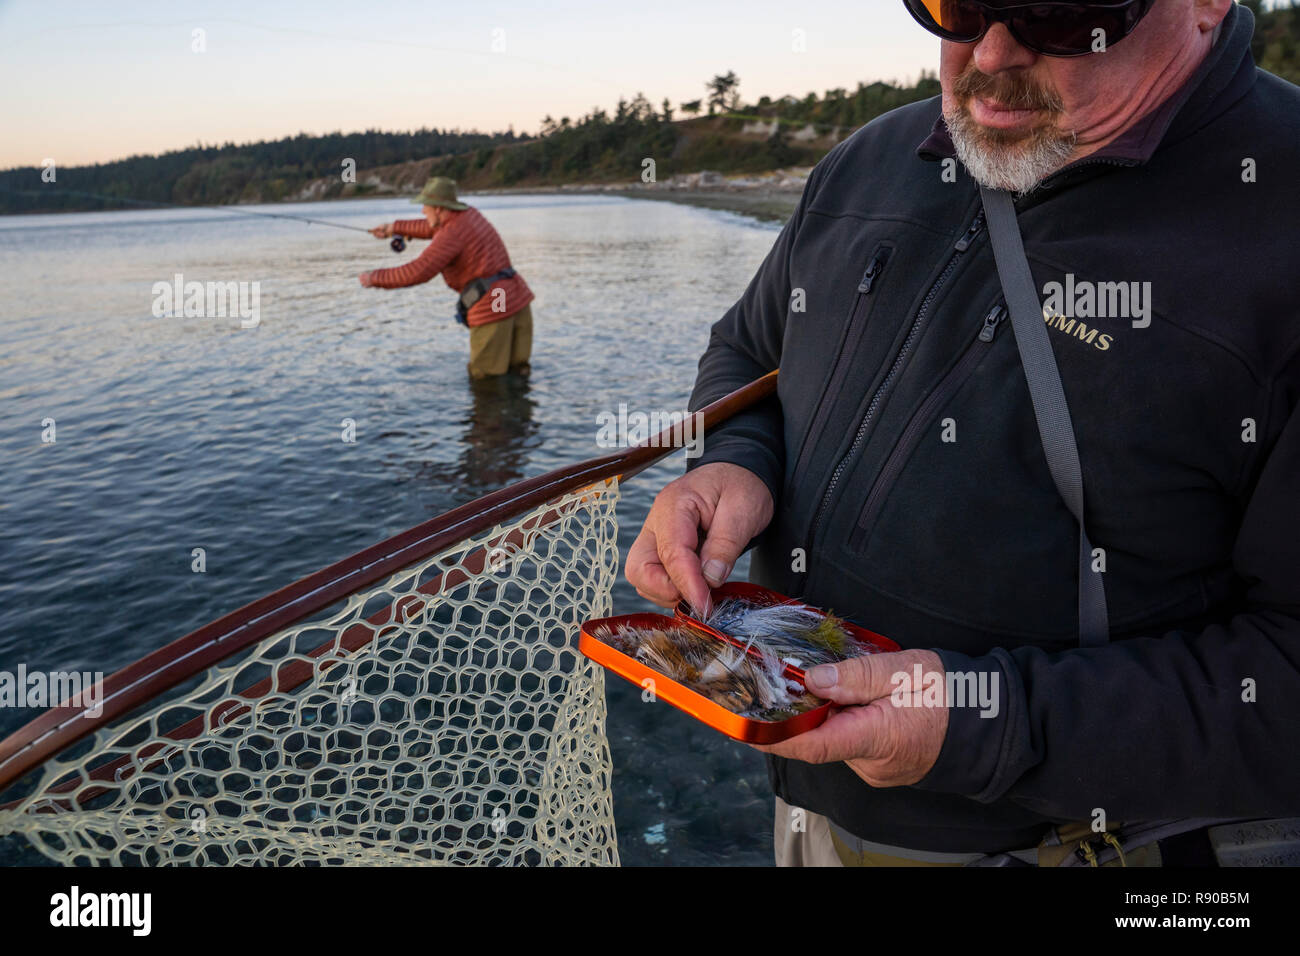 Eine Fly-fishing Guide prüft seine Fliege Sortiment für Lachs und searun Küsten cutthroat Forelle, während seine Kunden fliegen Fische im Hintergrund. Stockfoto